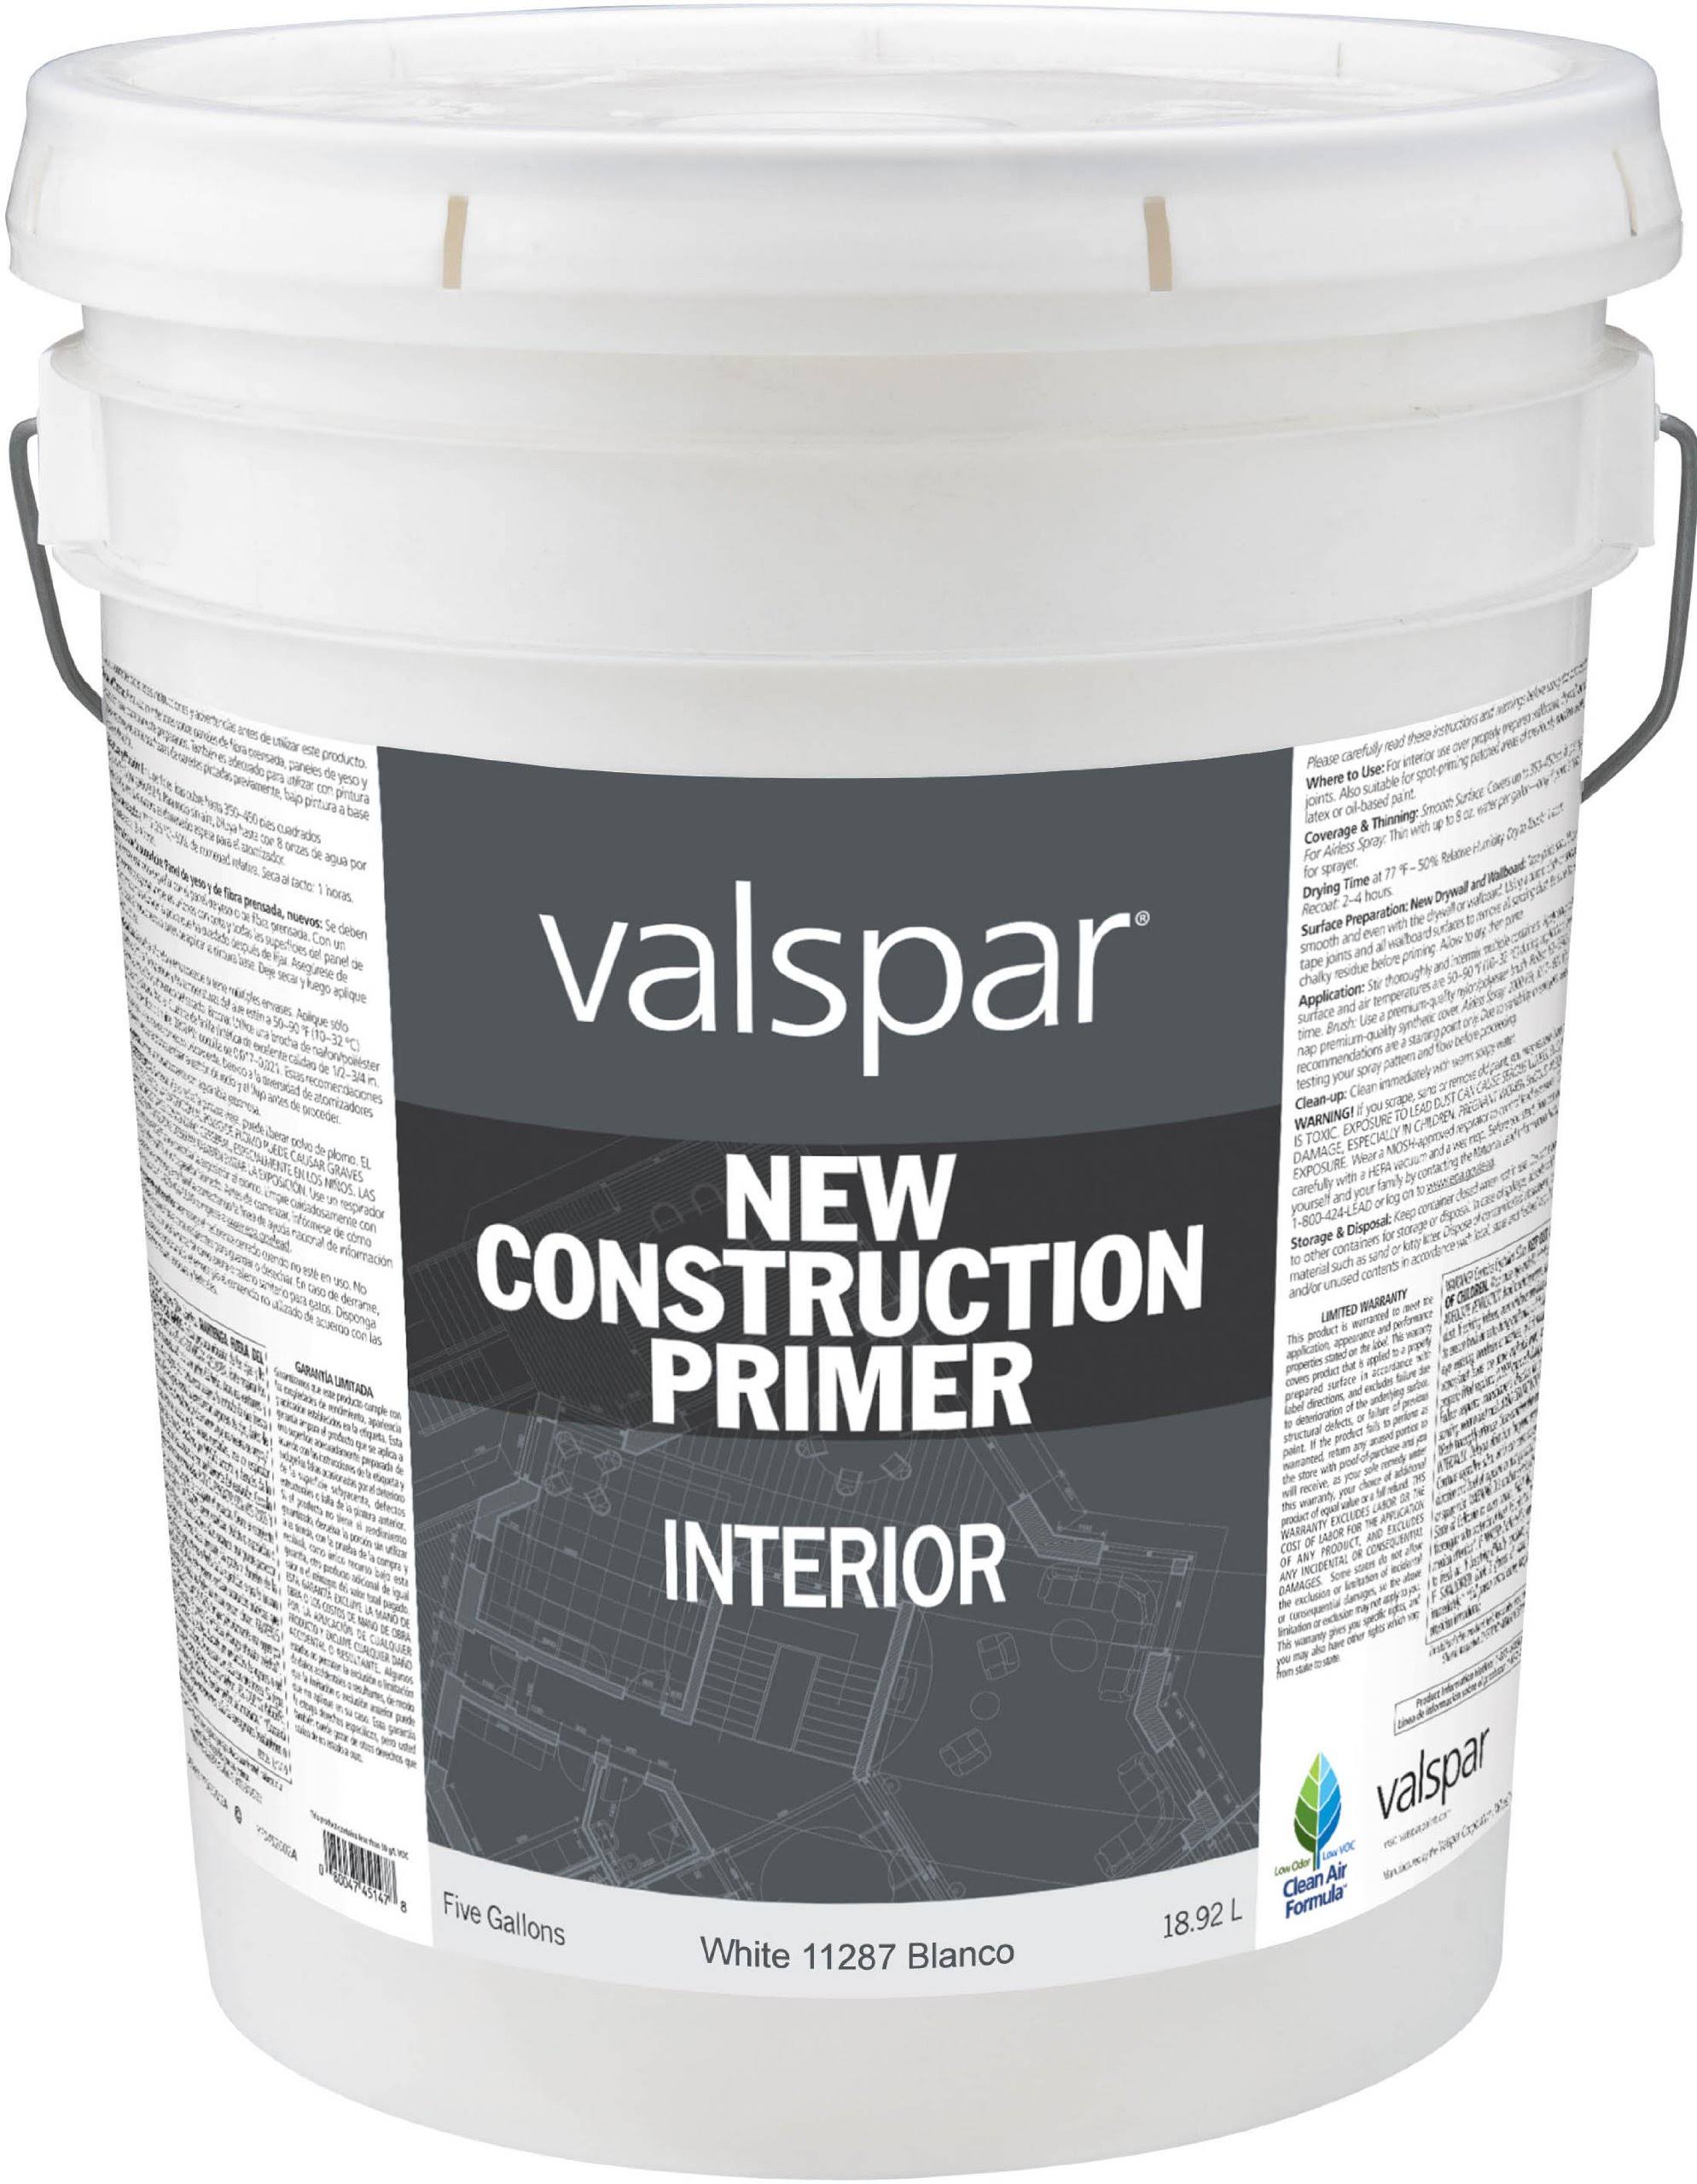 Valspar New Construction Primer - 5gal, Interior